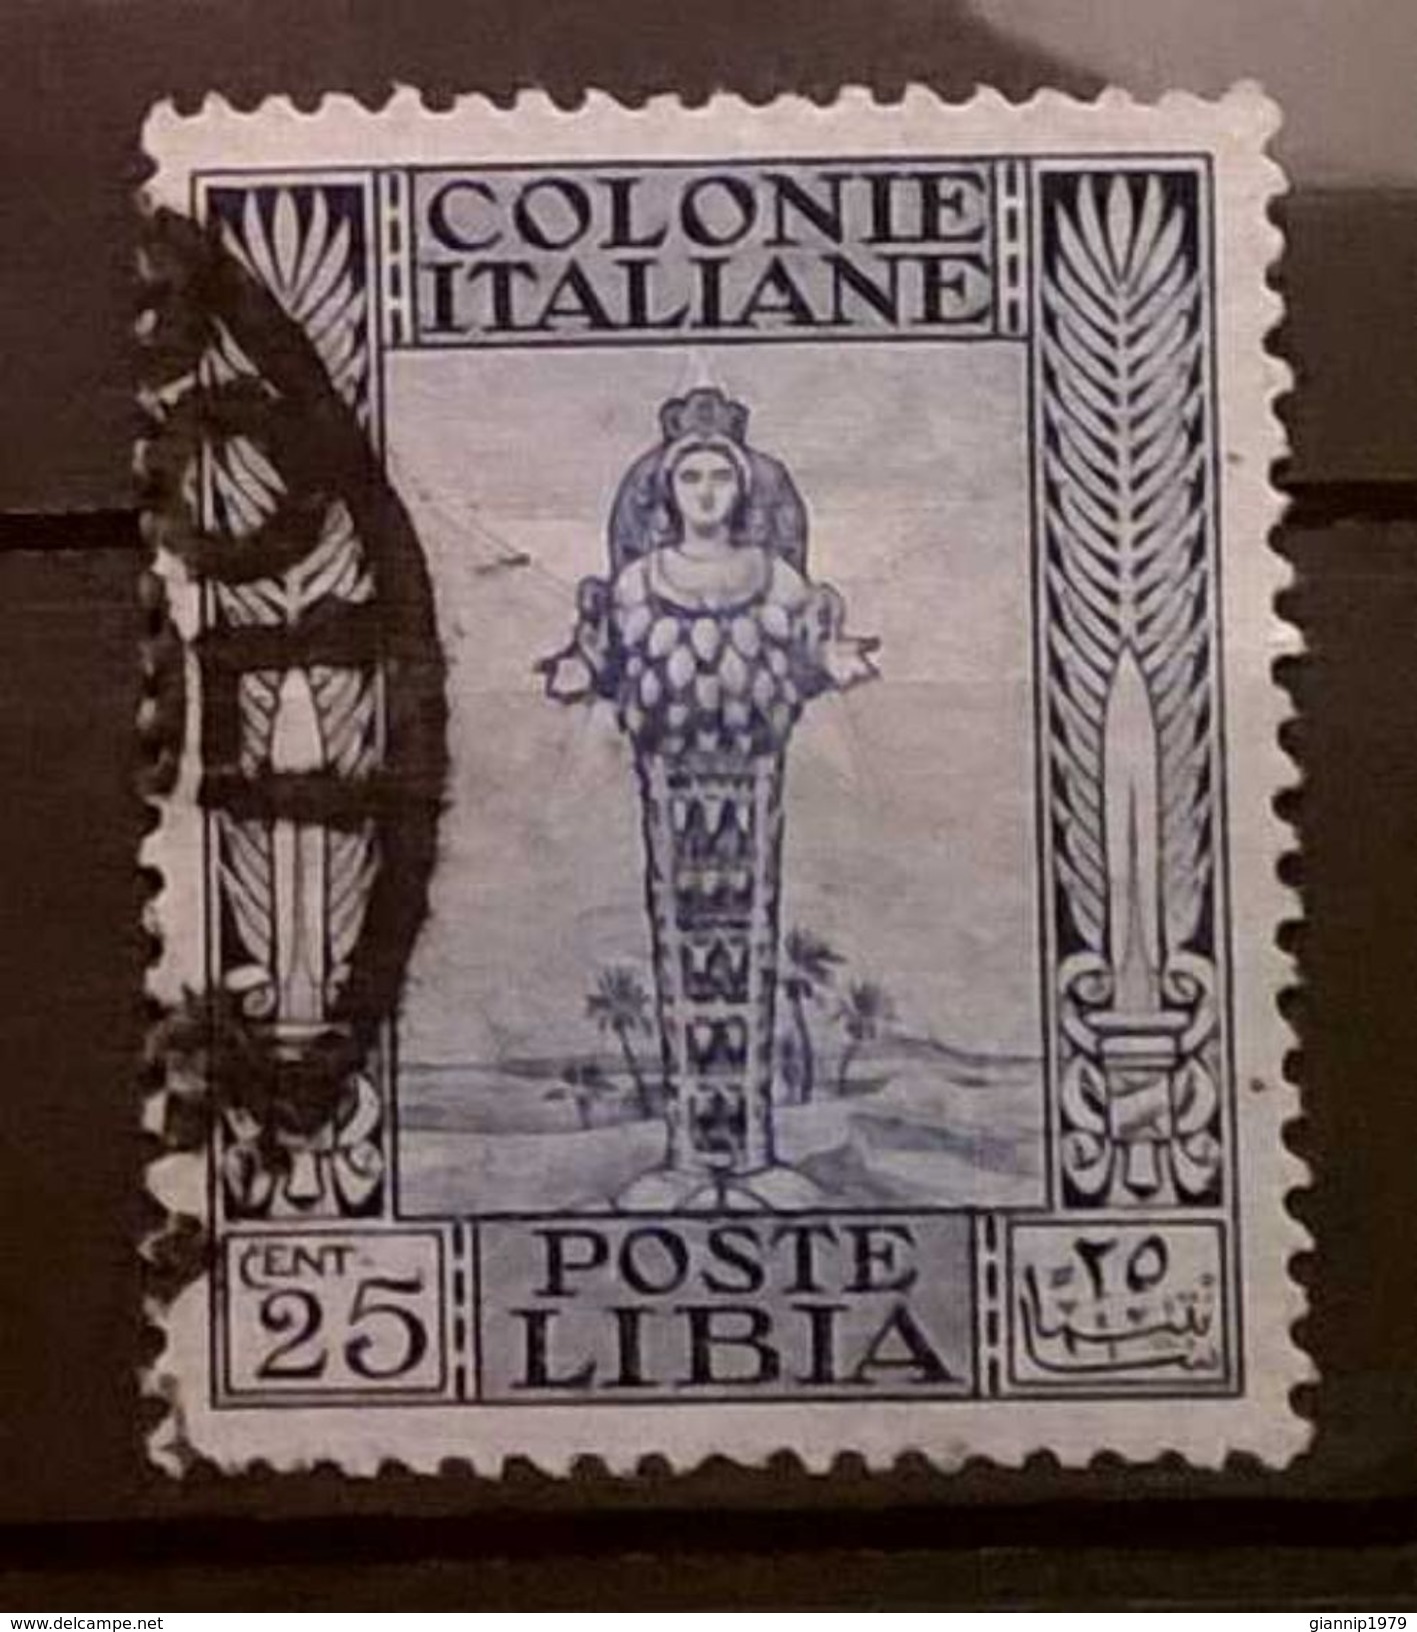 FRANCOBOLLI STAMPS ITALIA ITALY 1921 COLONIA LIBIA SERIE ANTICHE - Libye